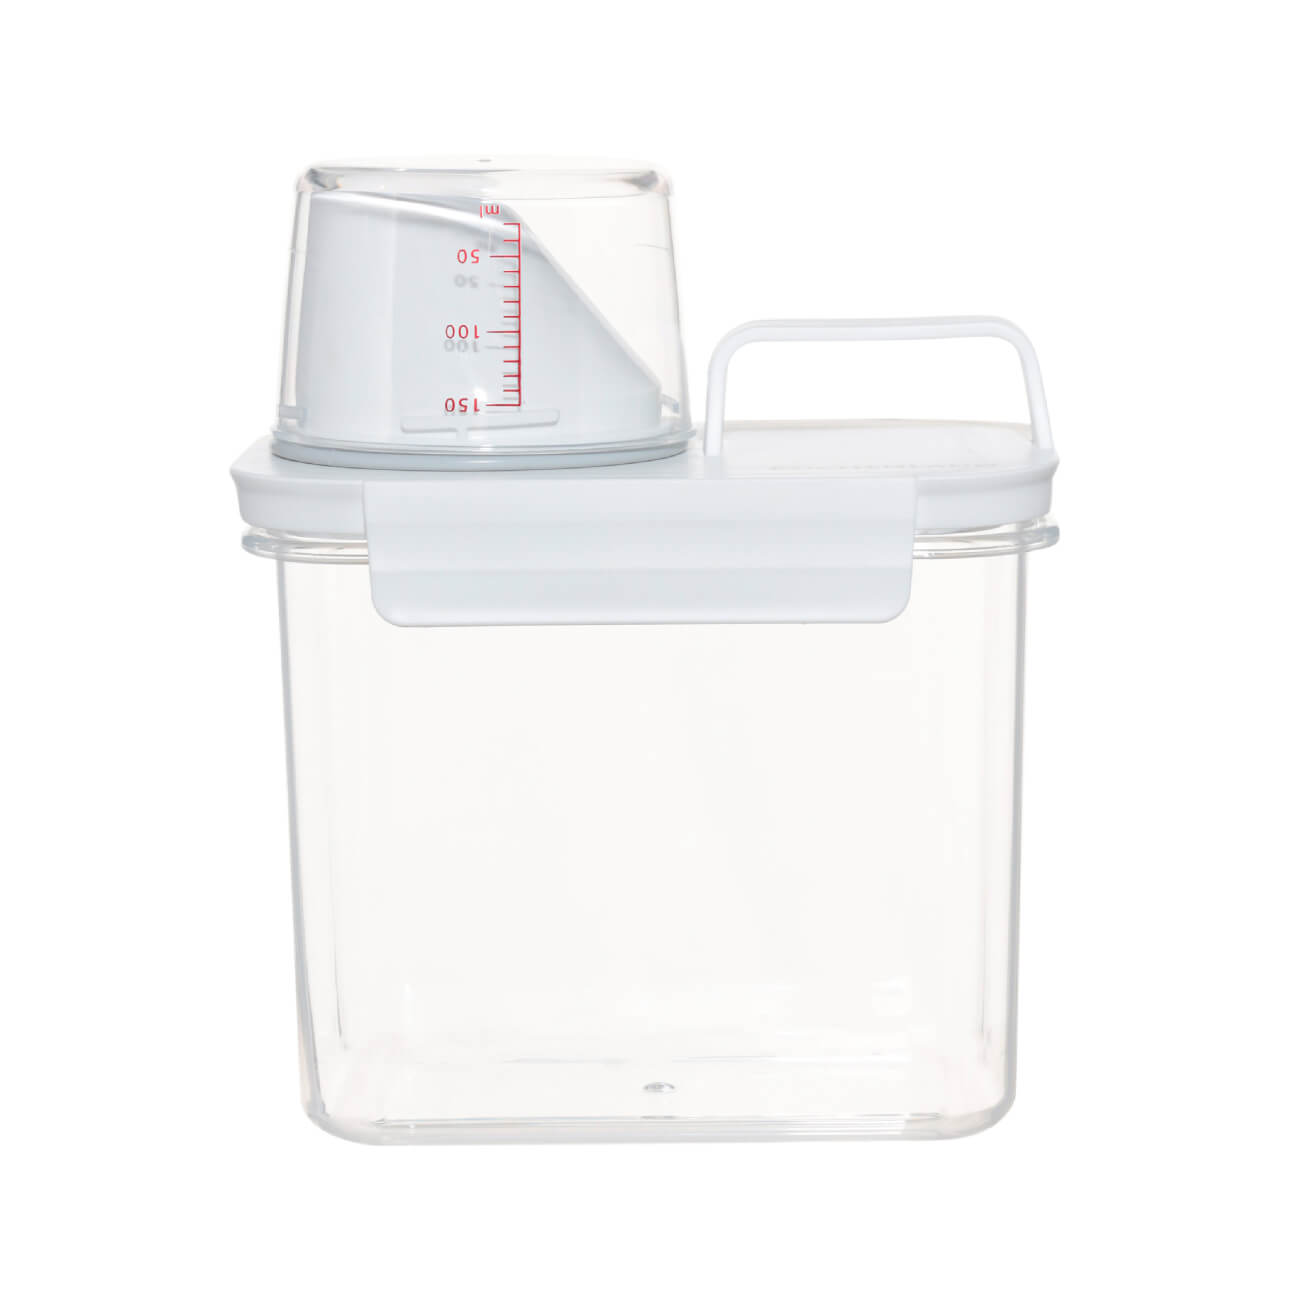 контейнер для порошка 5 л ведерко полимербыт с493 4349300 Контейнер для стирального порошка или геля, 1,1 л, с мерником, пластик, белый, Compact